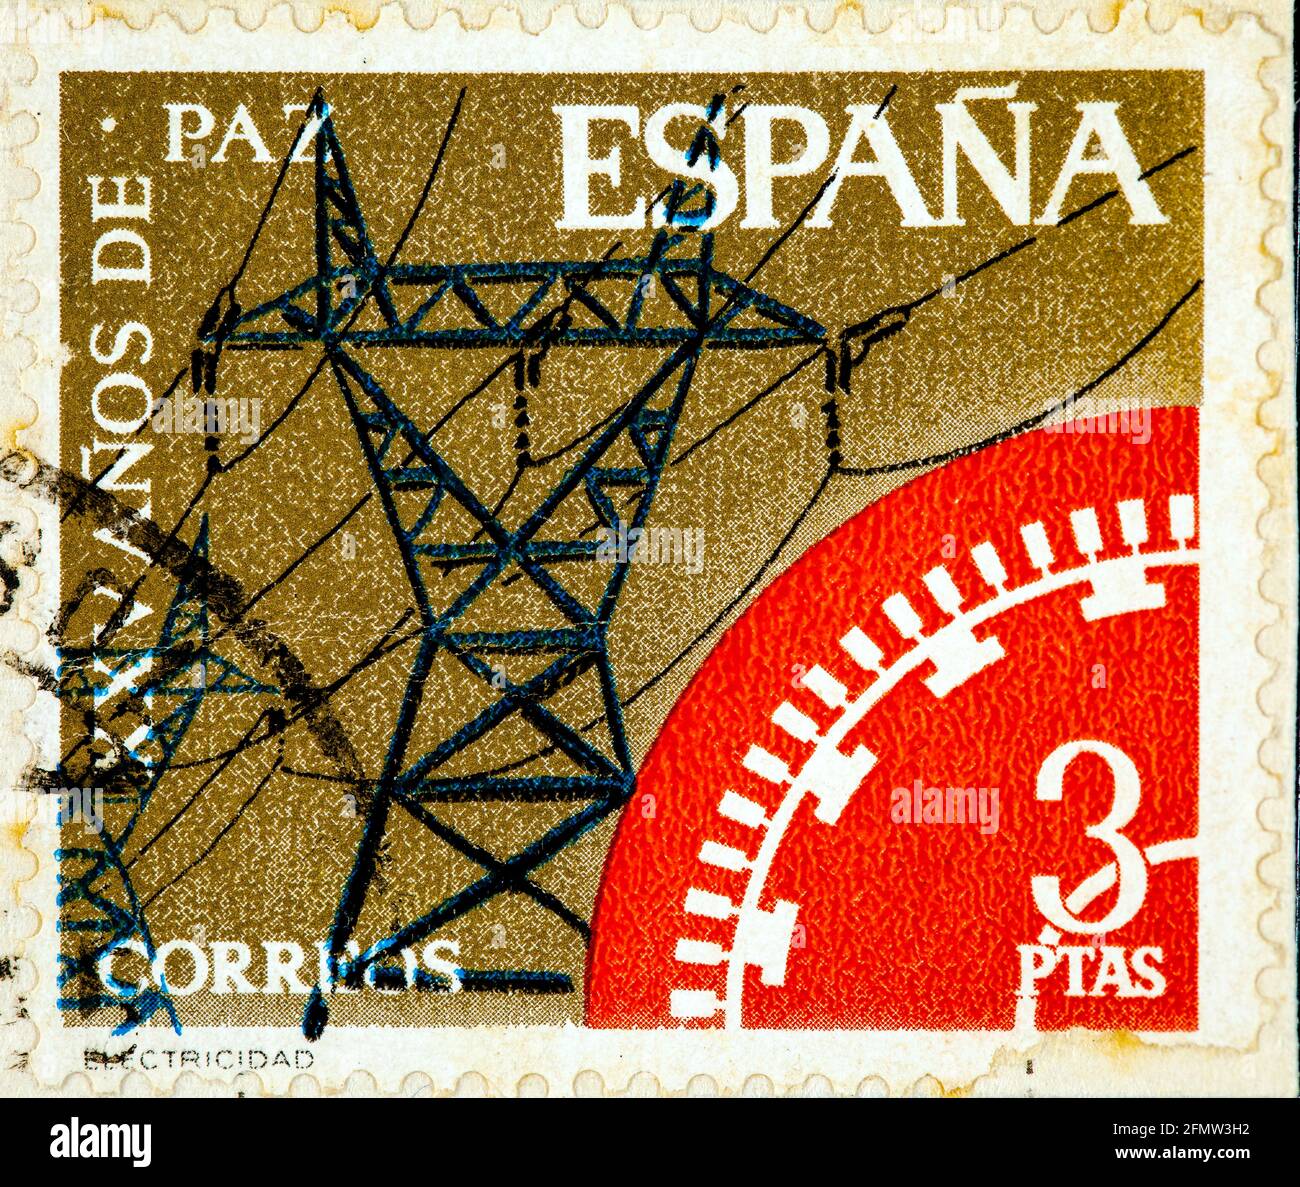 ESPAGNE - VERS 1964: Un timbre imprimé en Espagne montre 25 ans de paix, l'électricité vers 1966 Banque D'Images